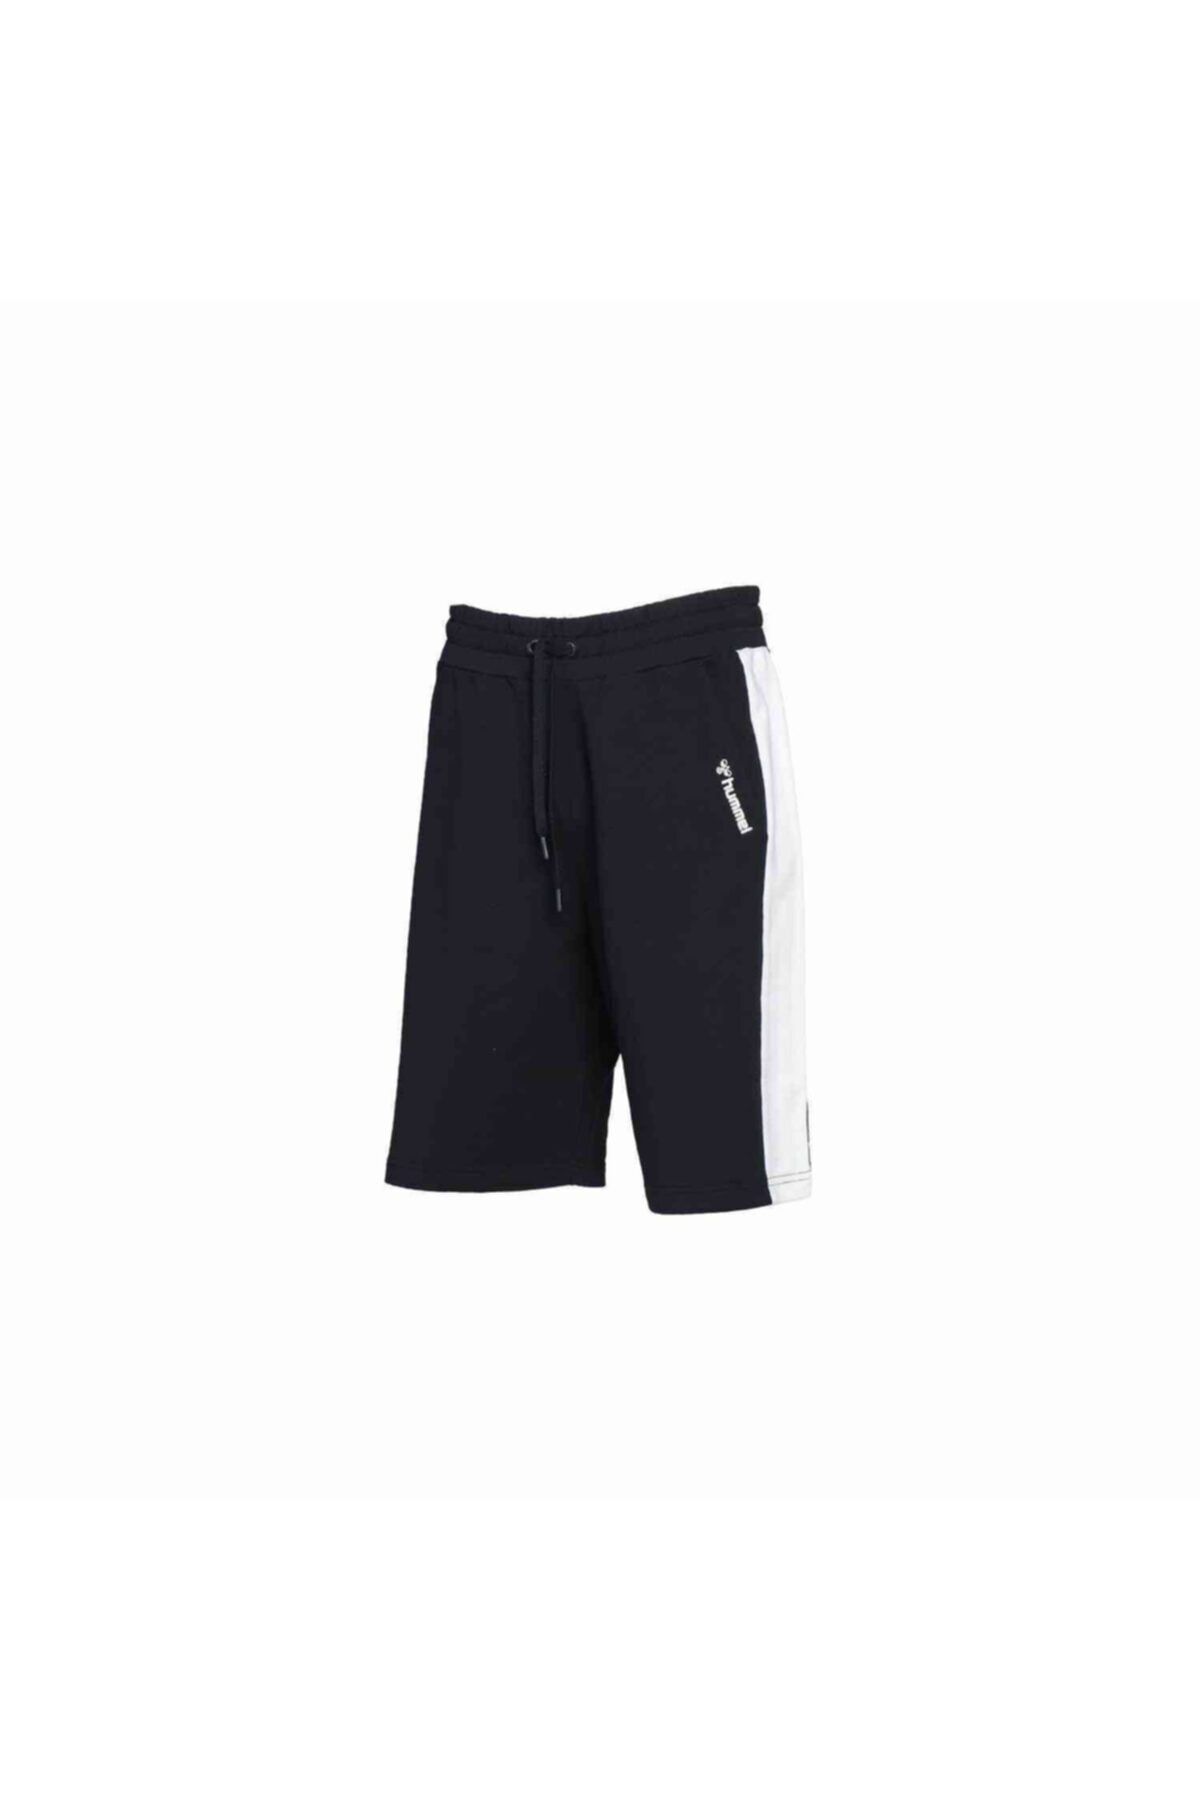 hummel Sports Shorts - Black - Trendyol